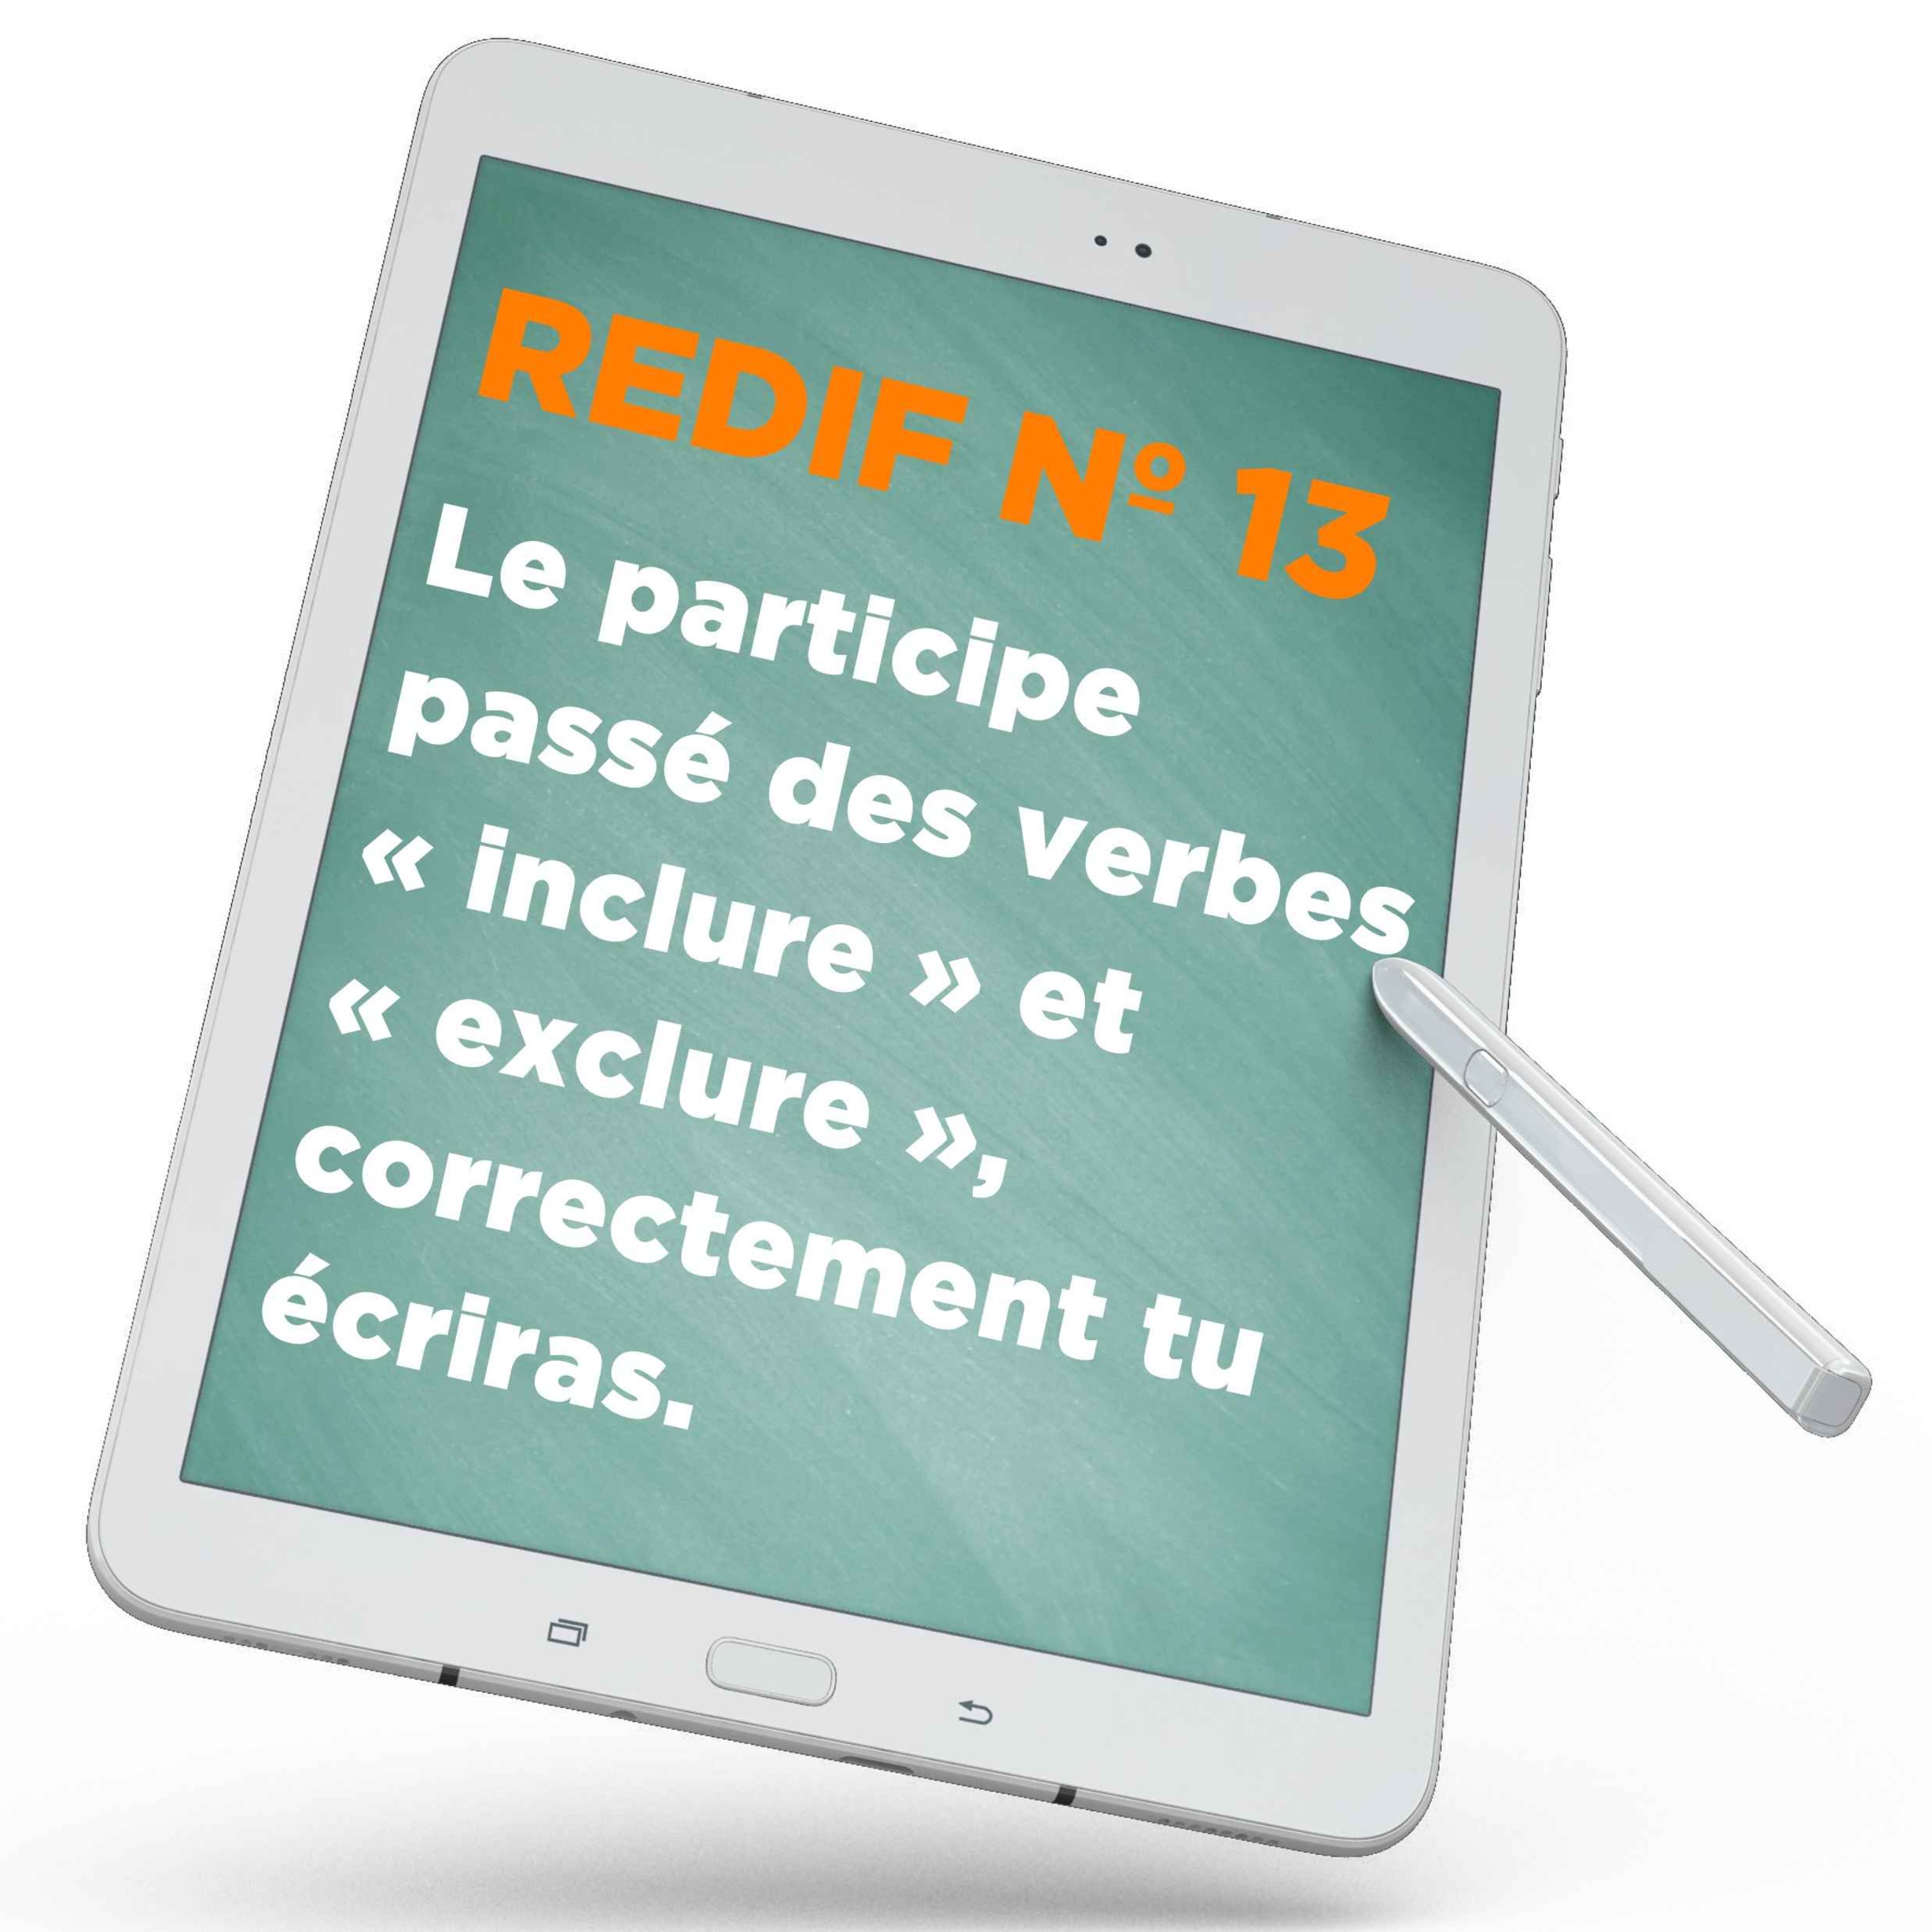 Redif nº 13 : Le participe passé des verbes « inclure » et « exclure », correctement tu écriras.